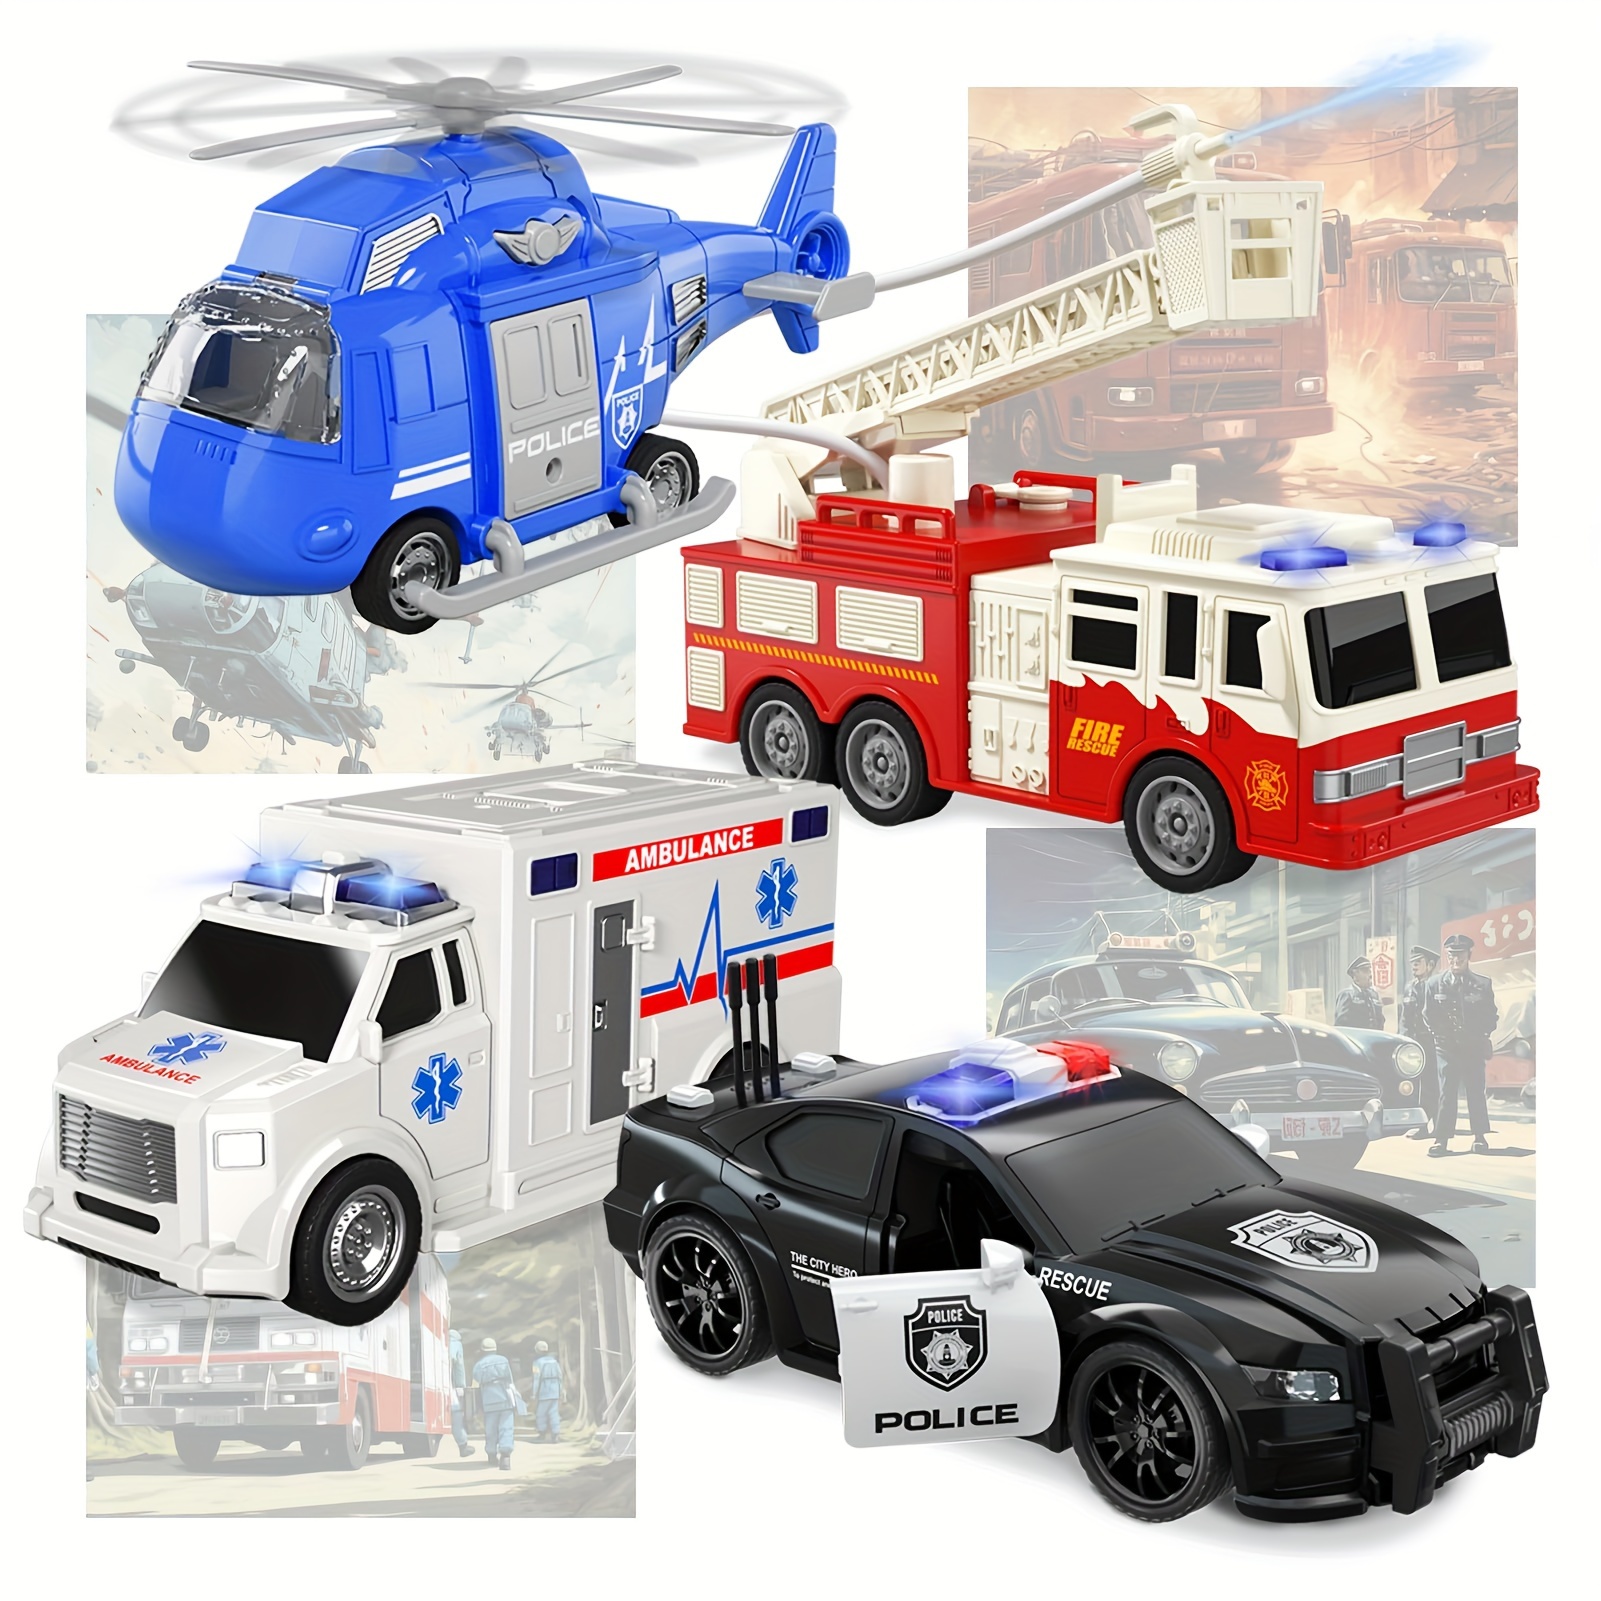 TEMI Truck Toys para niños de 3 4 5 6 7 años - Paquete de 5 vehículos de  transporte urbano, juguetes para niños, coche para niñas y niños pequeños,  juego de potencia